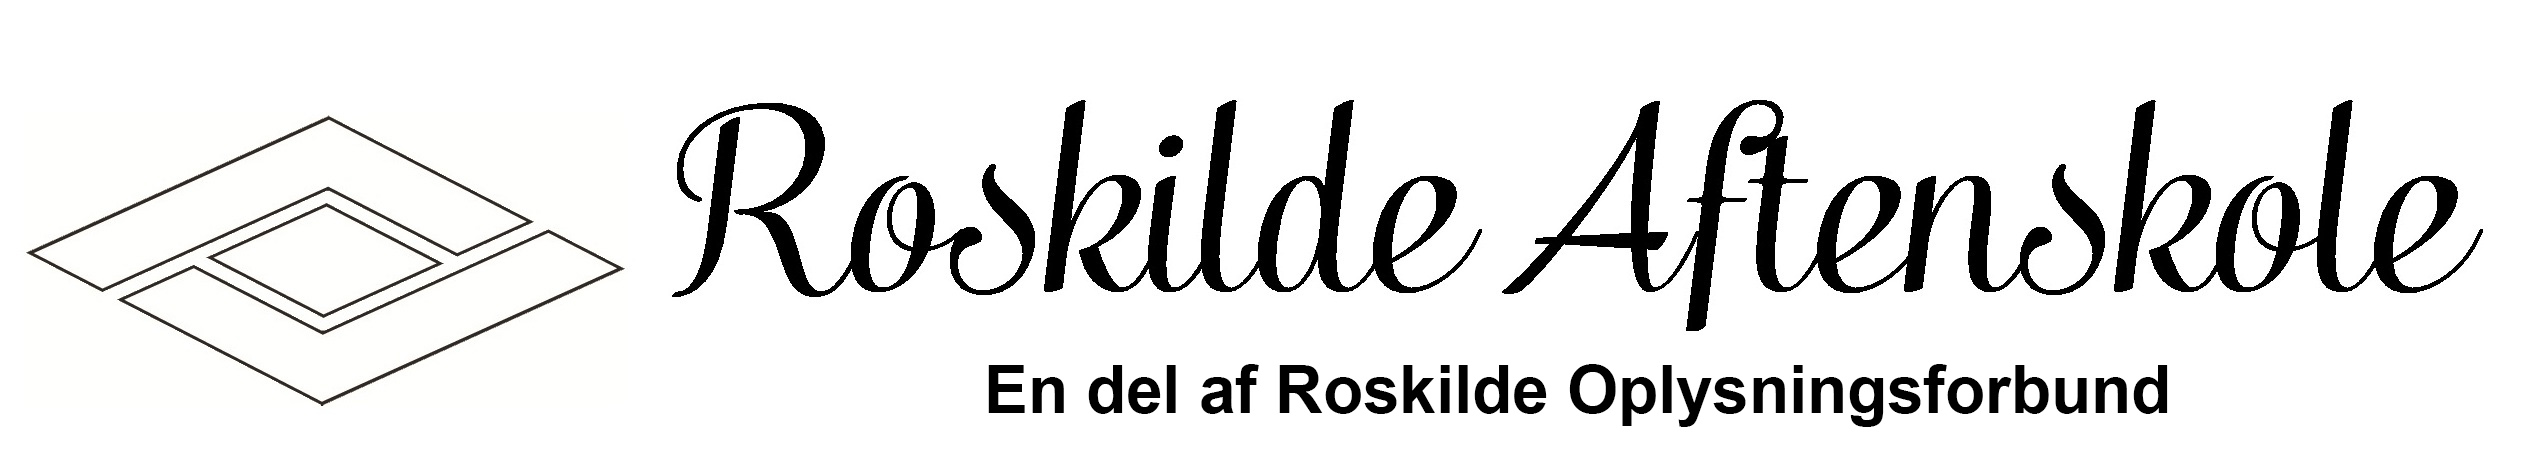 Roskilde Aftenskole NYT Logo